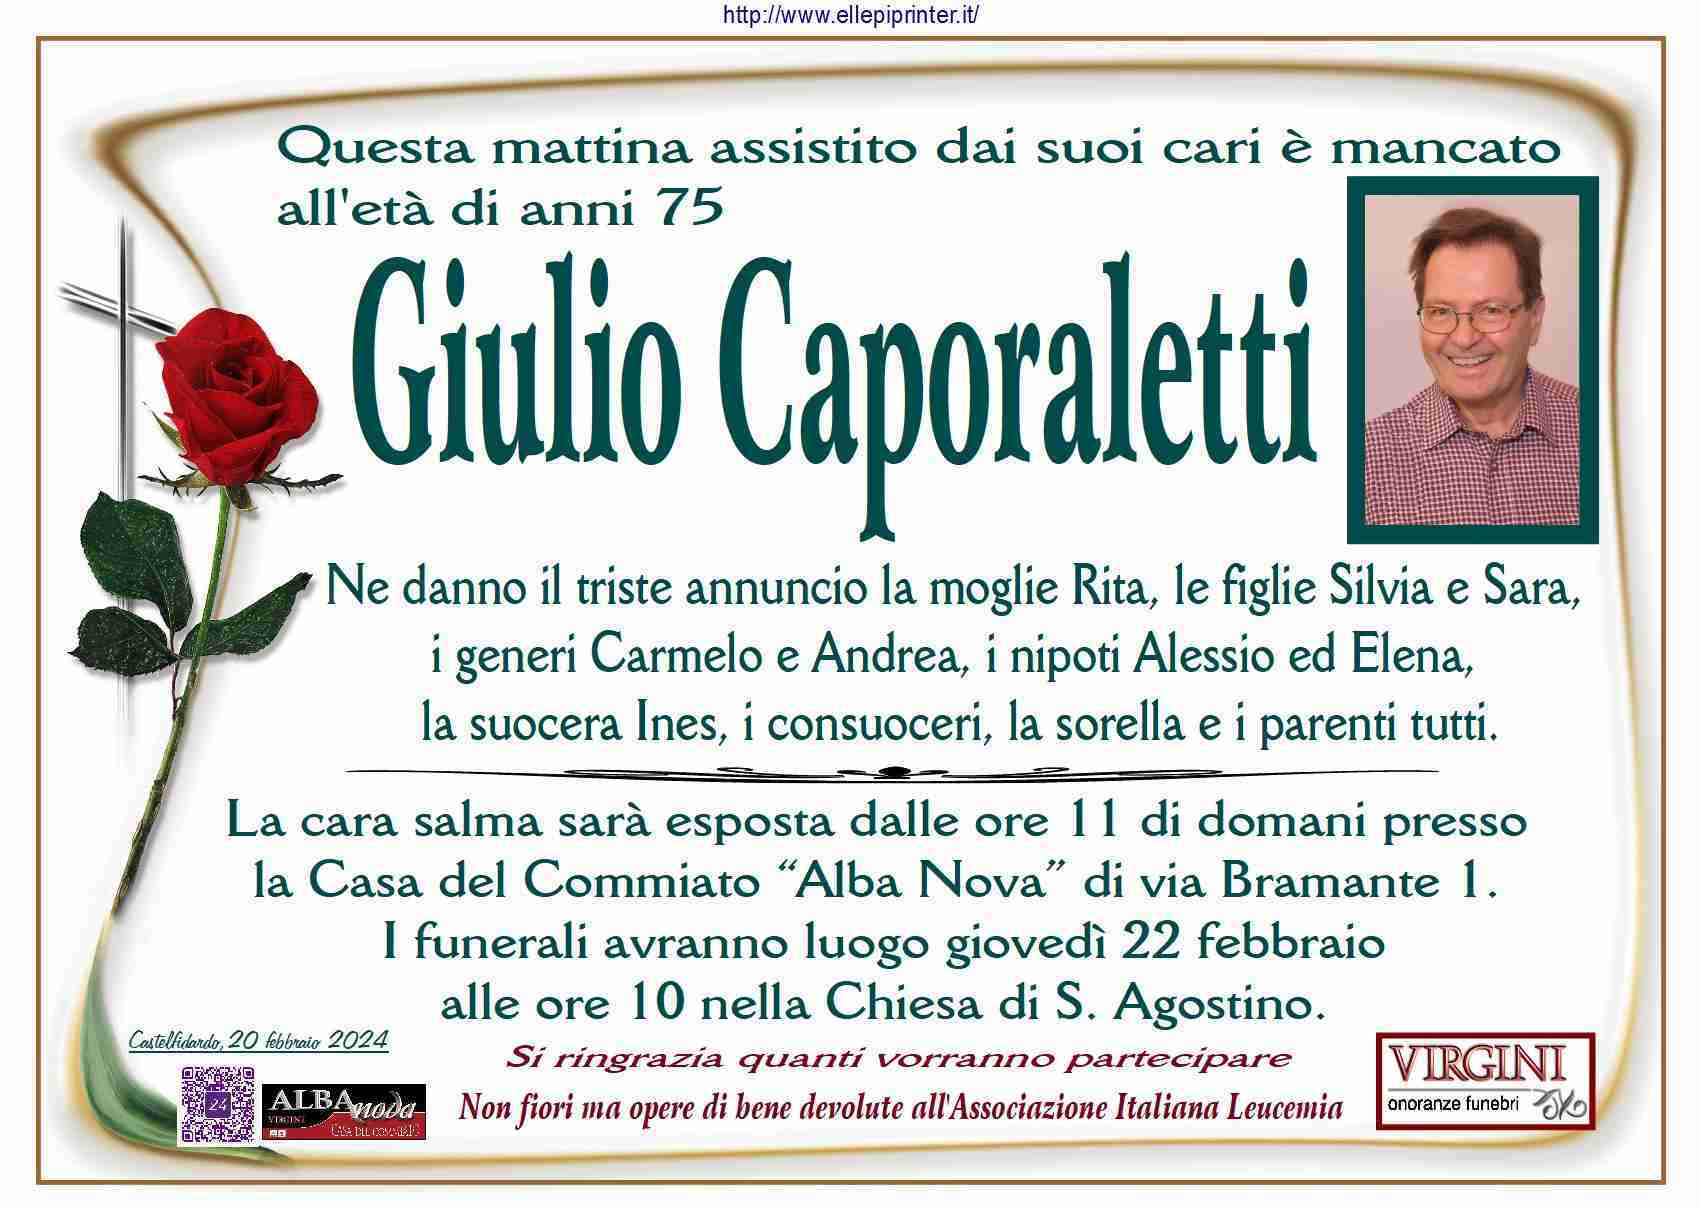 Giulio Caporaletti